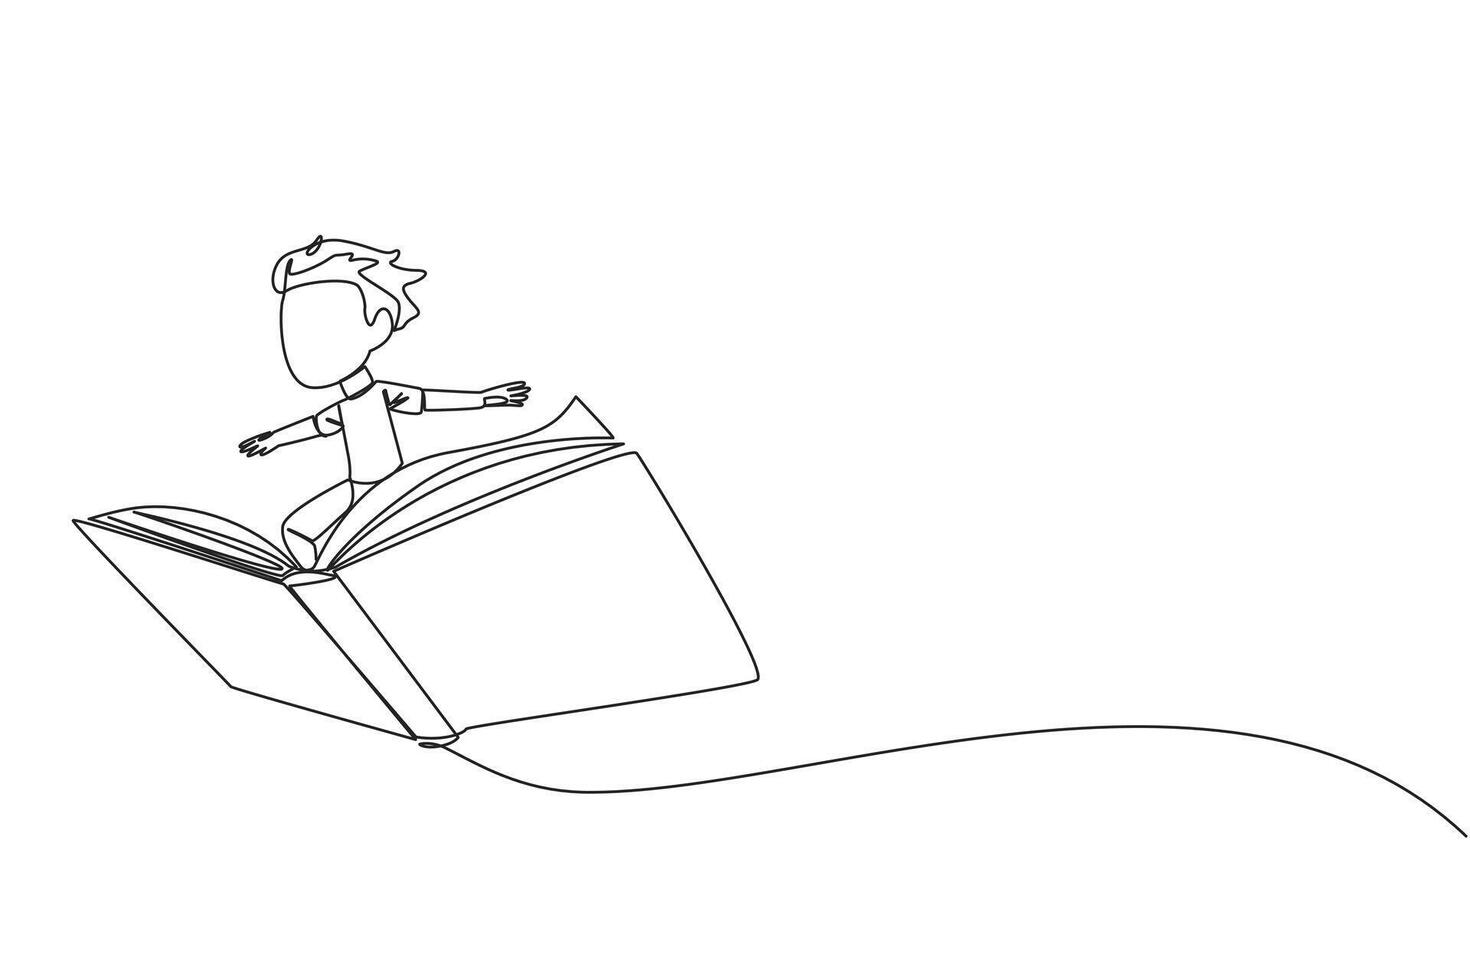 Single kontinuierlich Linie Zeichnung Junge Stehen auf ein groß fliegend öffnen Buch. mögen Reiten ein Wolke, fähig zu fliegen wie hoch wie möglich. lesen erhöht sich Einblick. Liebe lesen. einer Linie Design Illustration vektor